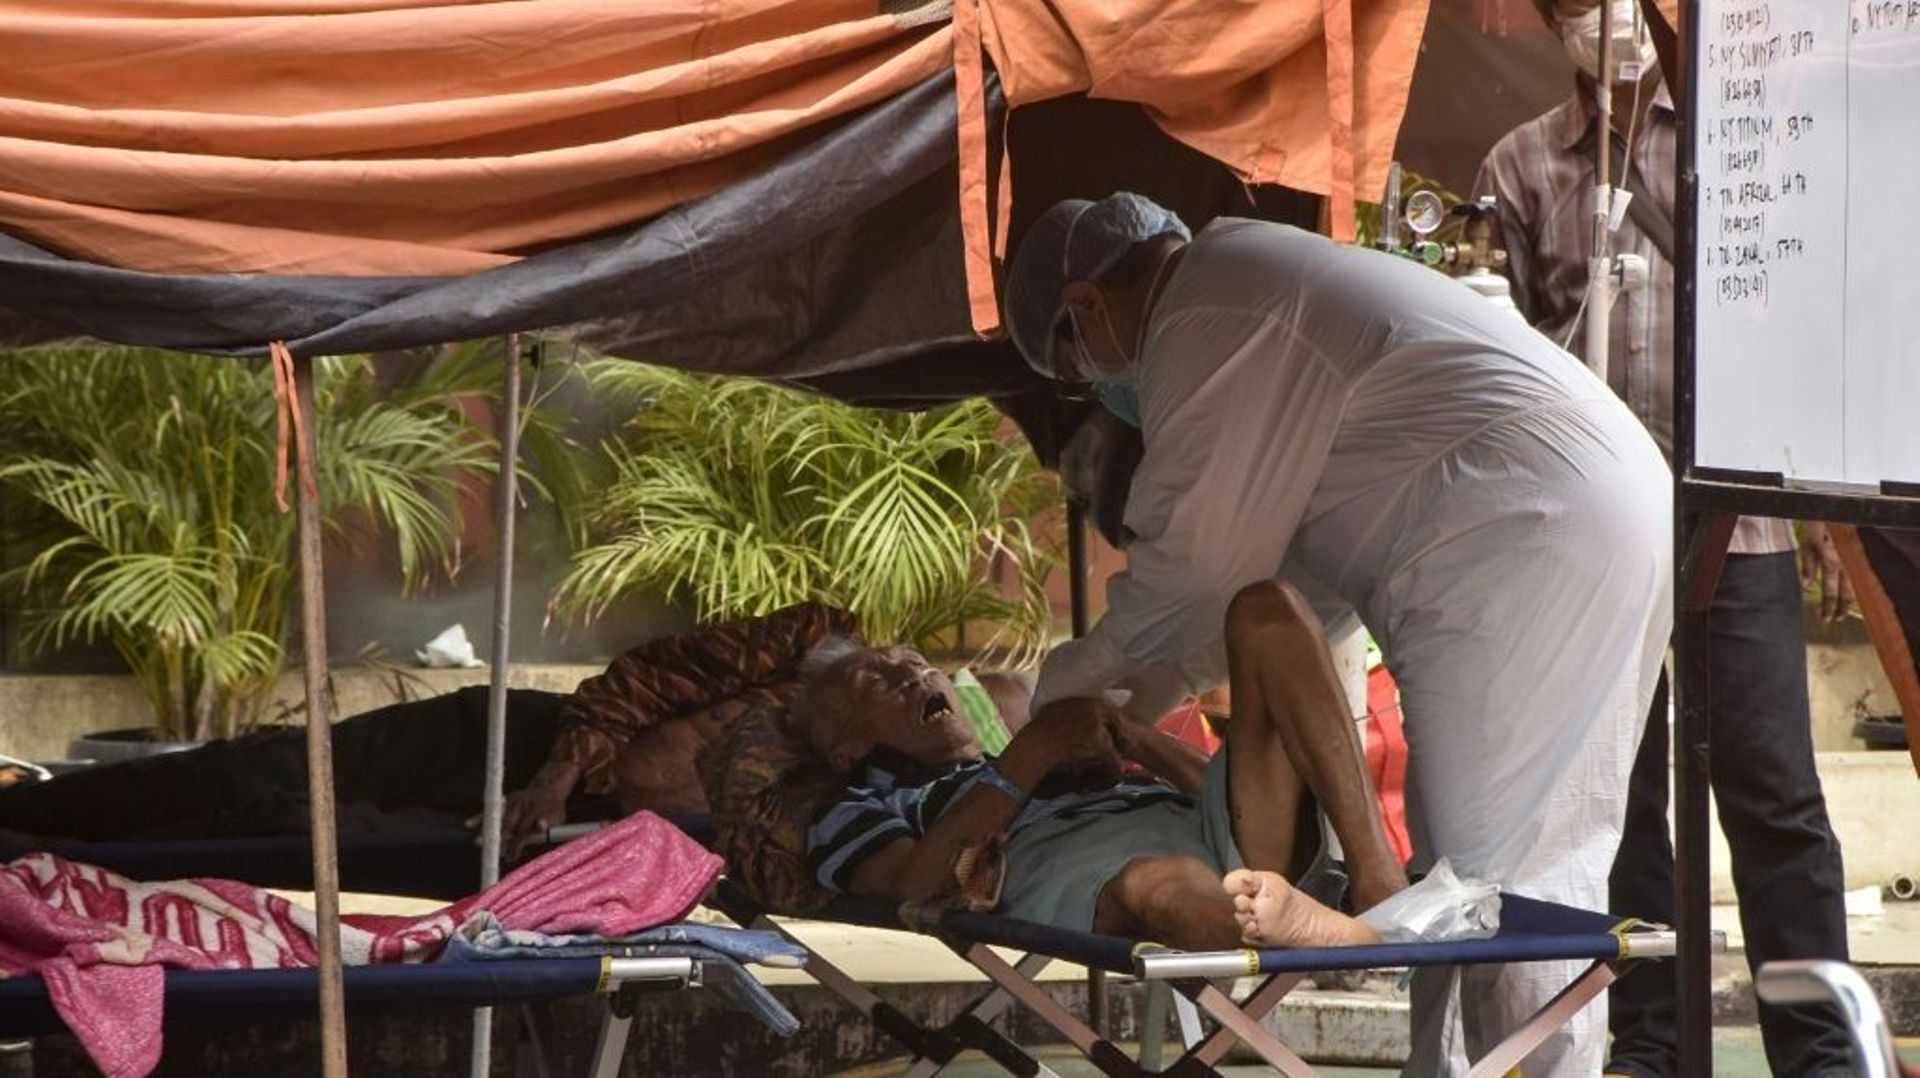 Un patient est traité à l’extérieur d’un hôpital débordé par la flambée de coronavirus, le 14 juillet à Bekasi, en Indonésie